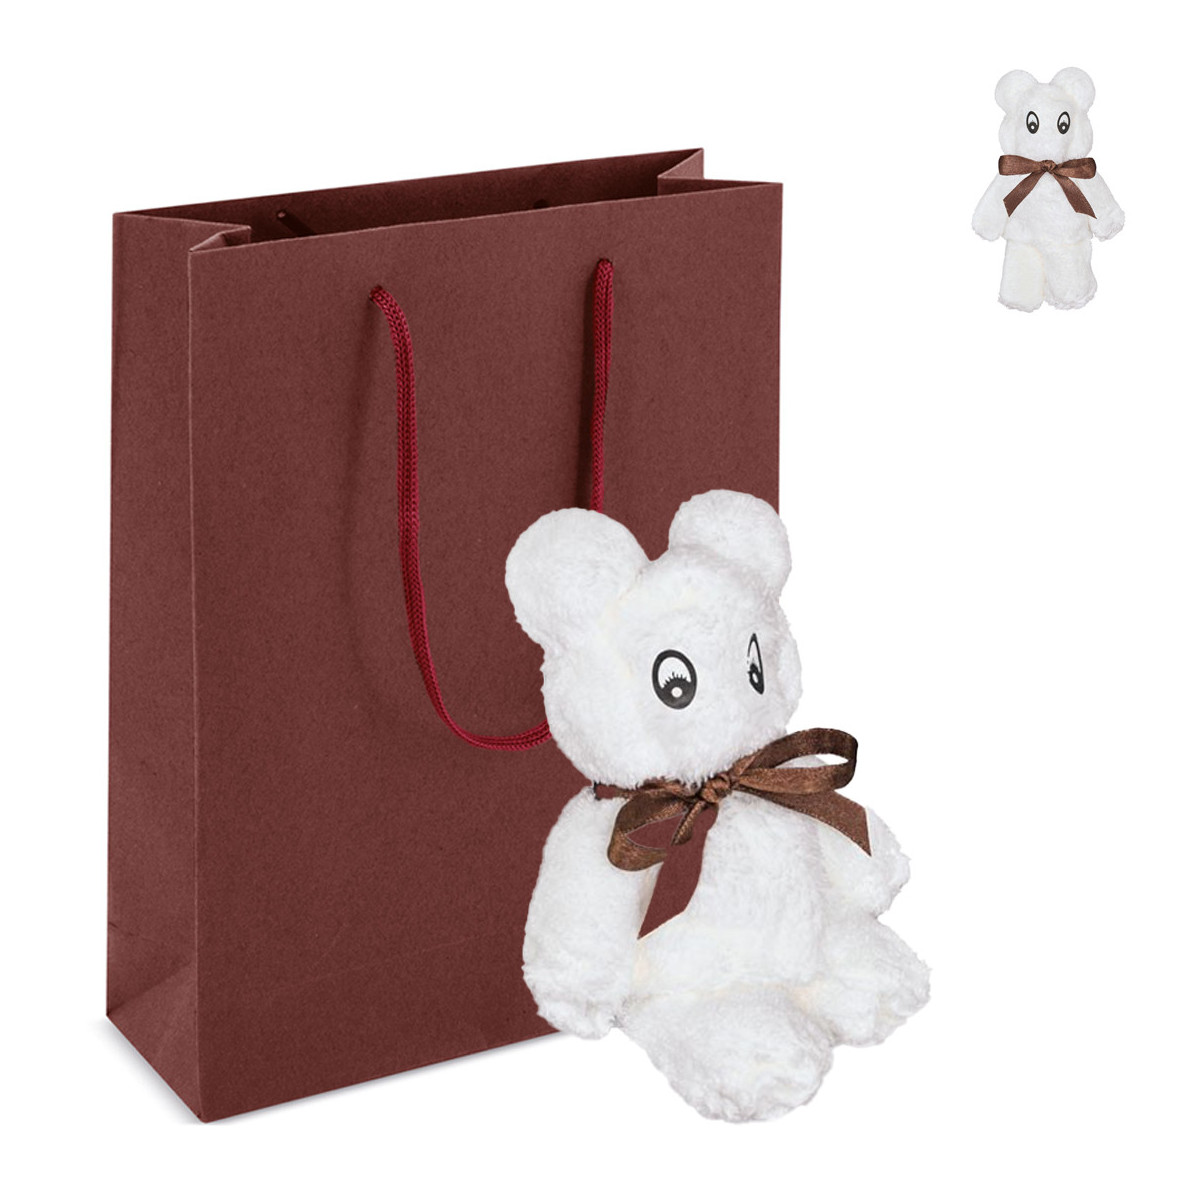 Asciugamano a forma di orso bianco soffice in sacchetto regalo